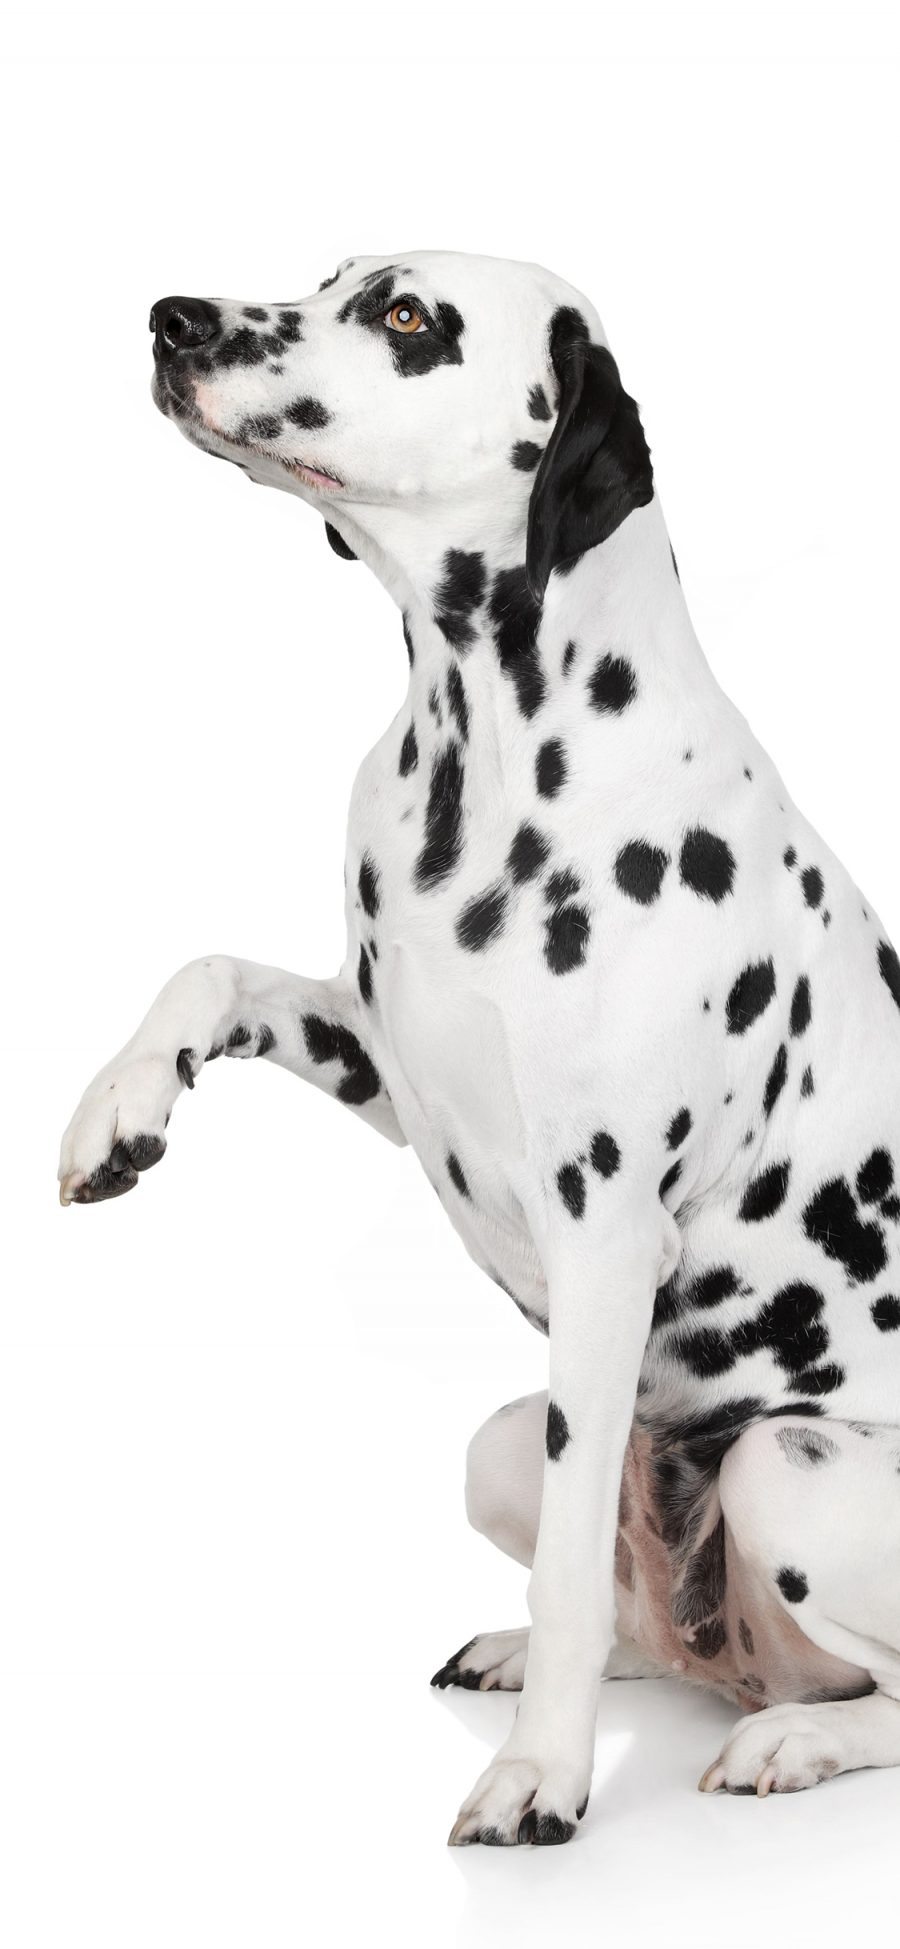 [2436×1125]斑点狗 犬 汪星人 宠物 苹果手机壁纸图片